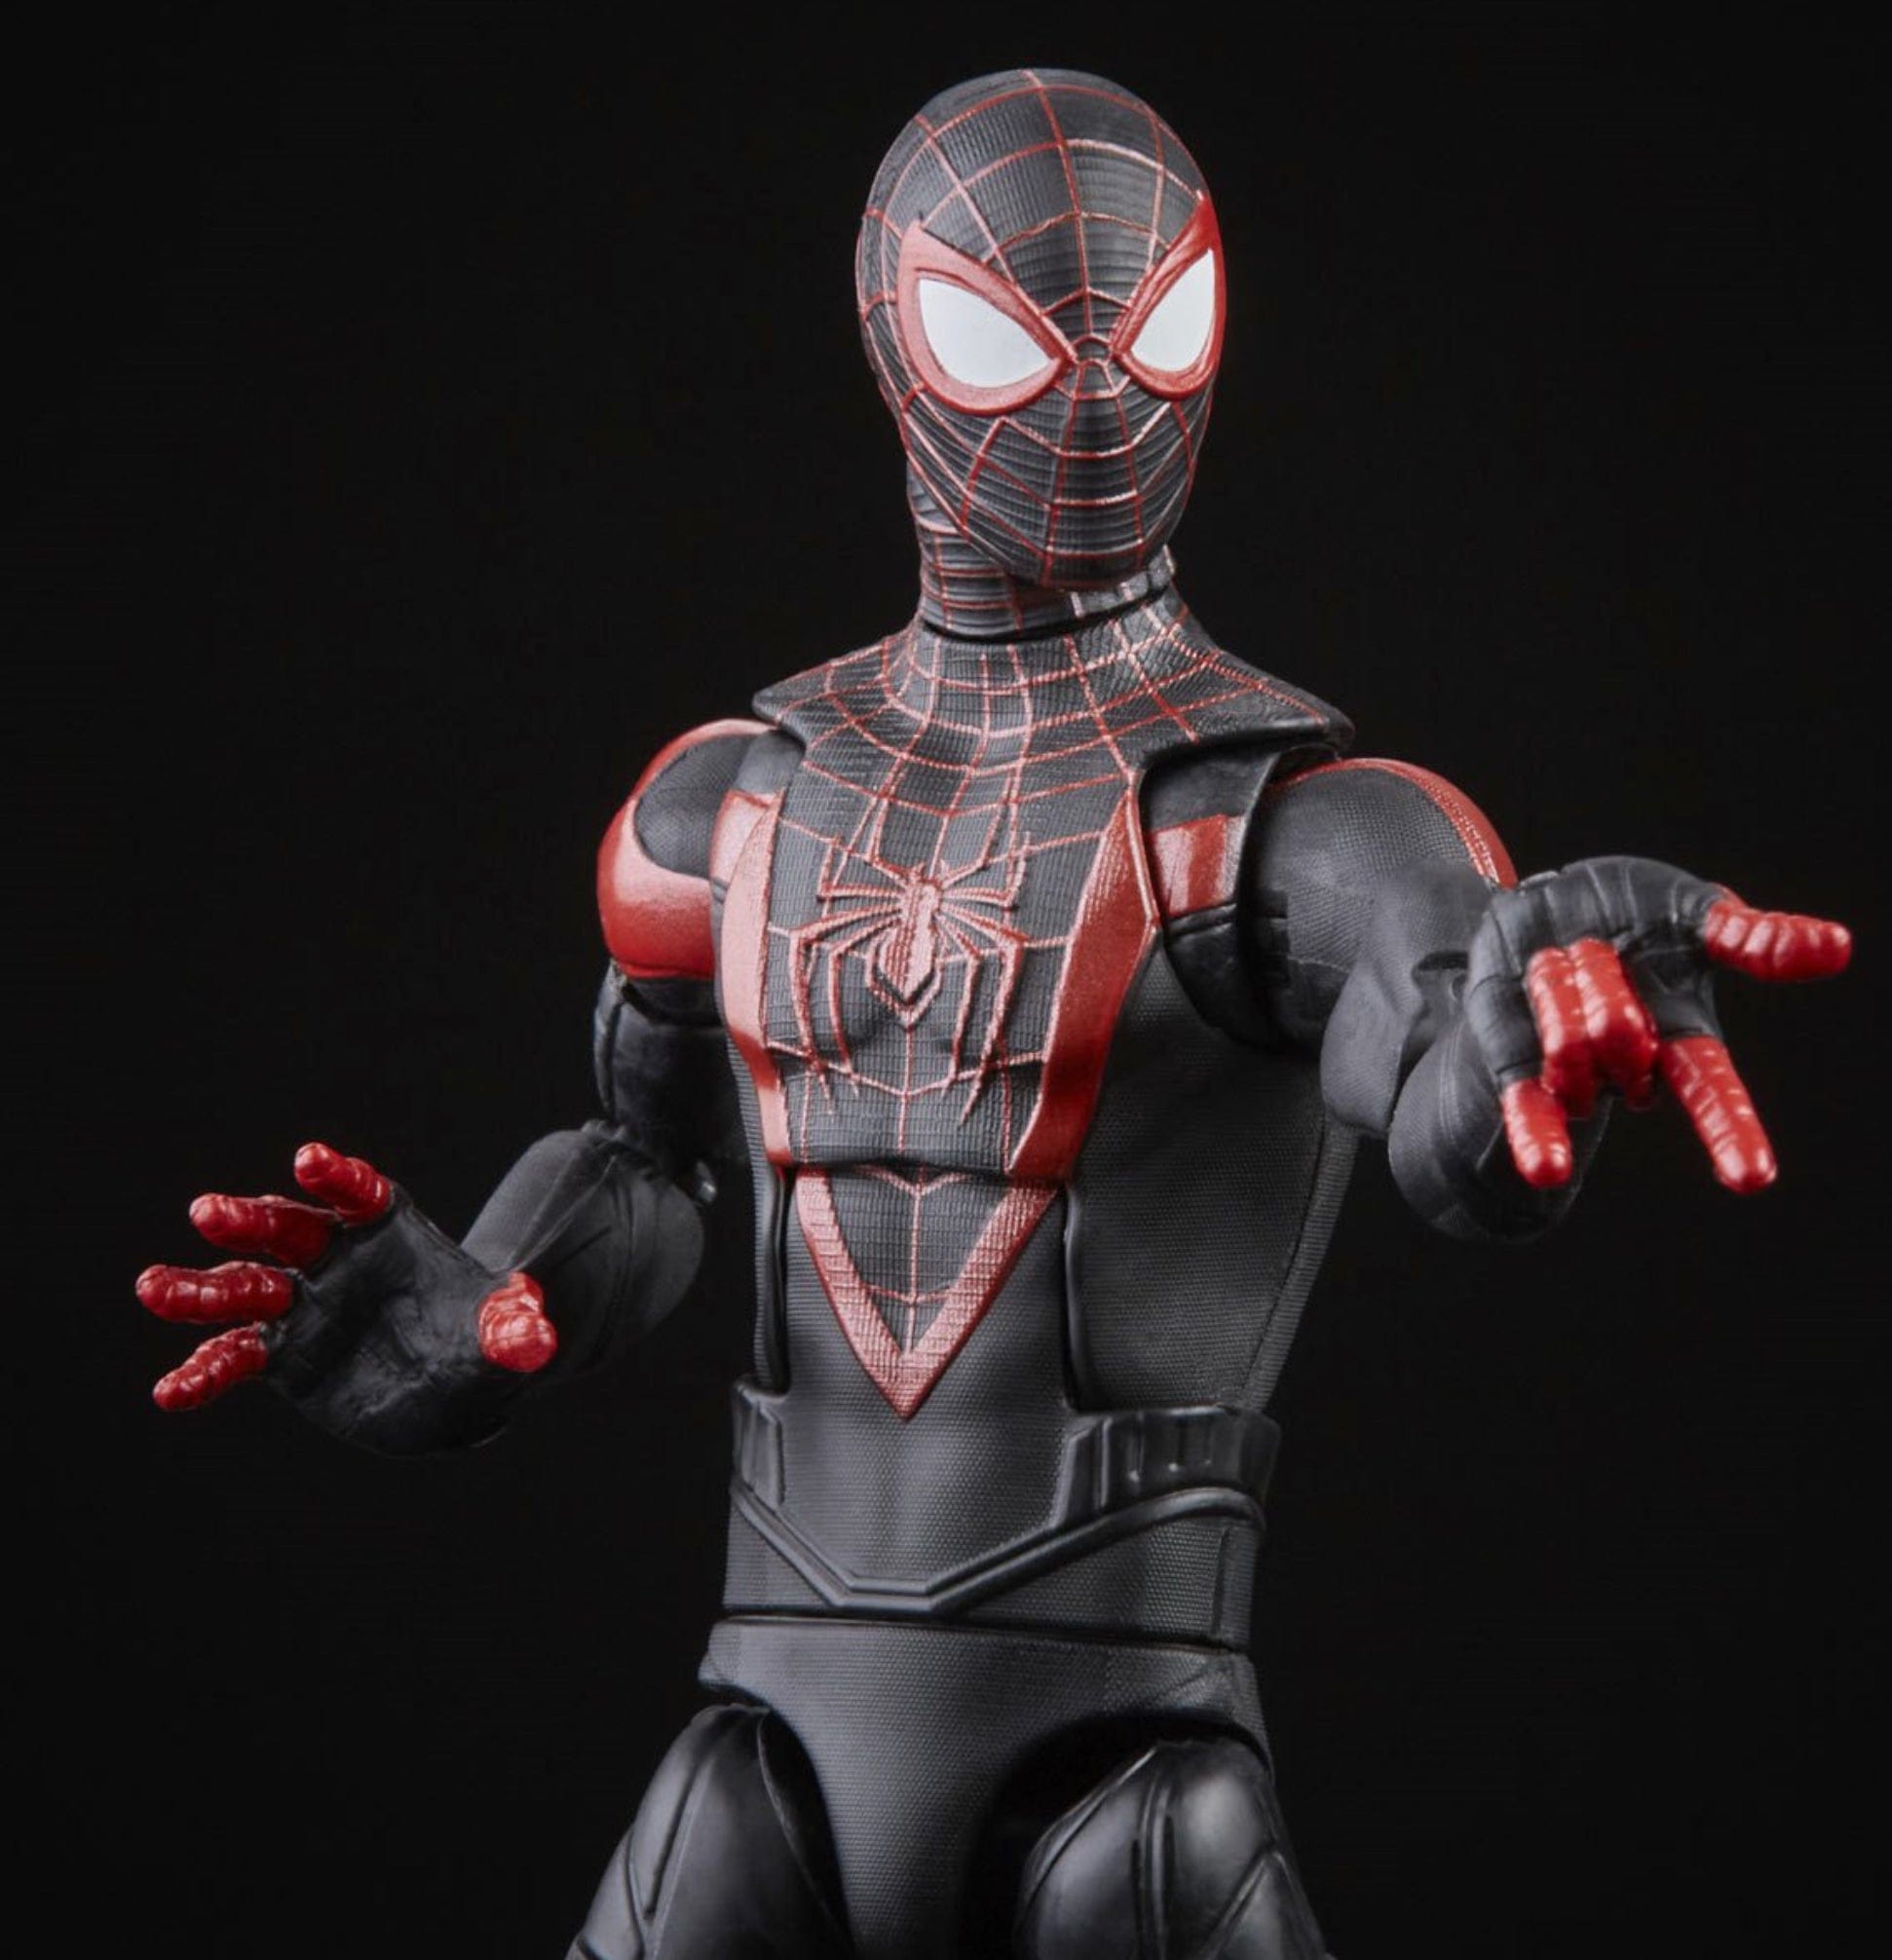 Spider-Man 3 Marvel Legends Miles Morales 6-Inch Action Figure Media pose black background